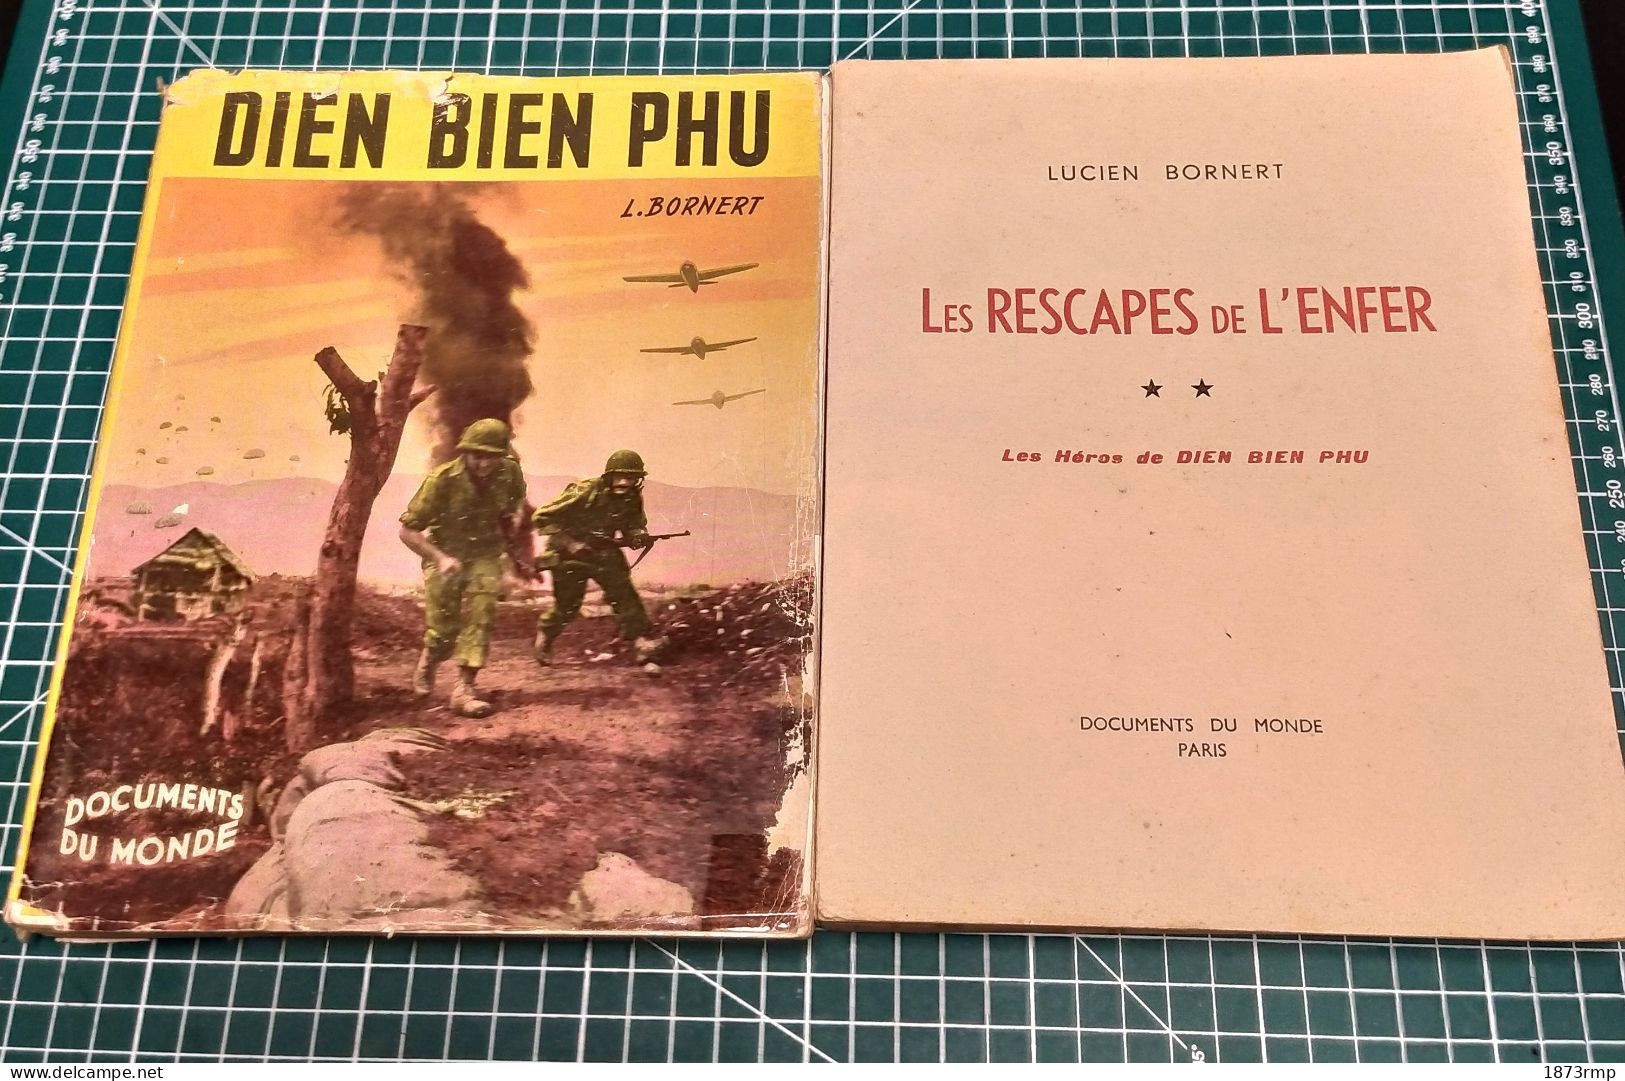 DIÊN BIÊN PHU ET LES RESCAPES DE L'ENFER, LUCIEN BORNERT, EDITION ORIGINALE 1954, GUERRE D'INDOCHINE - Französisch